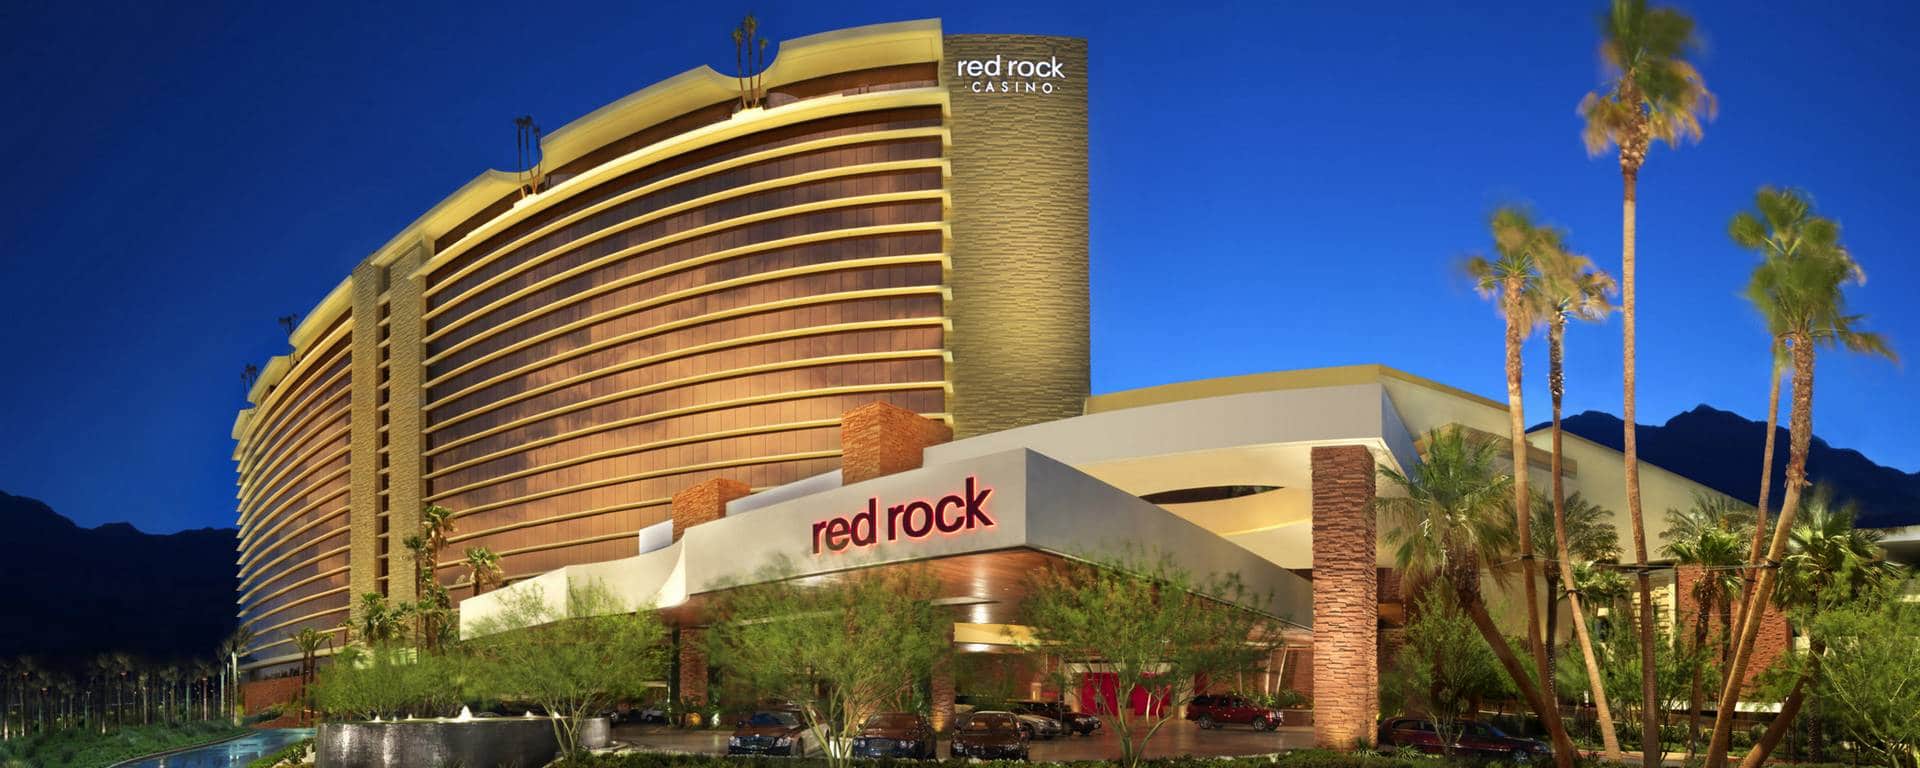 red rock casino las vegas nv